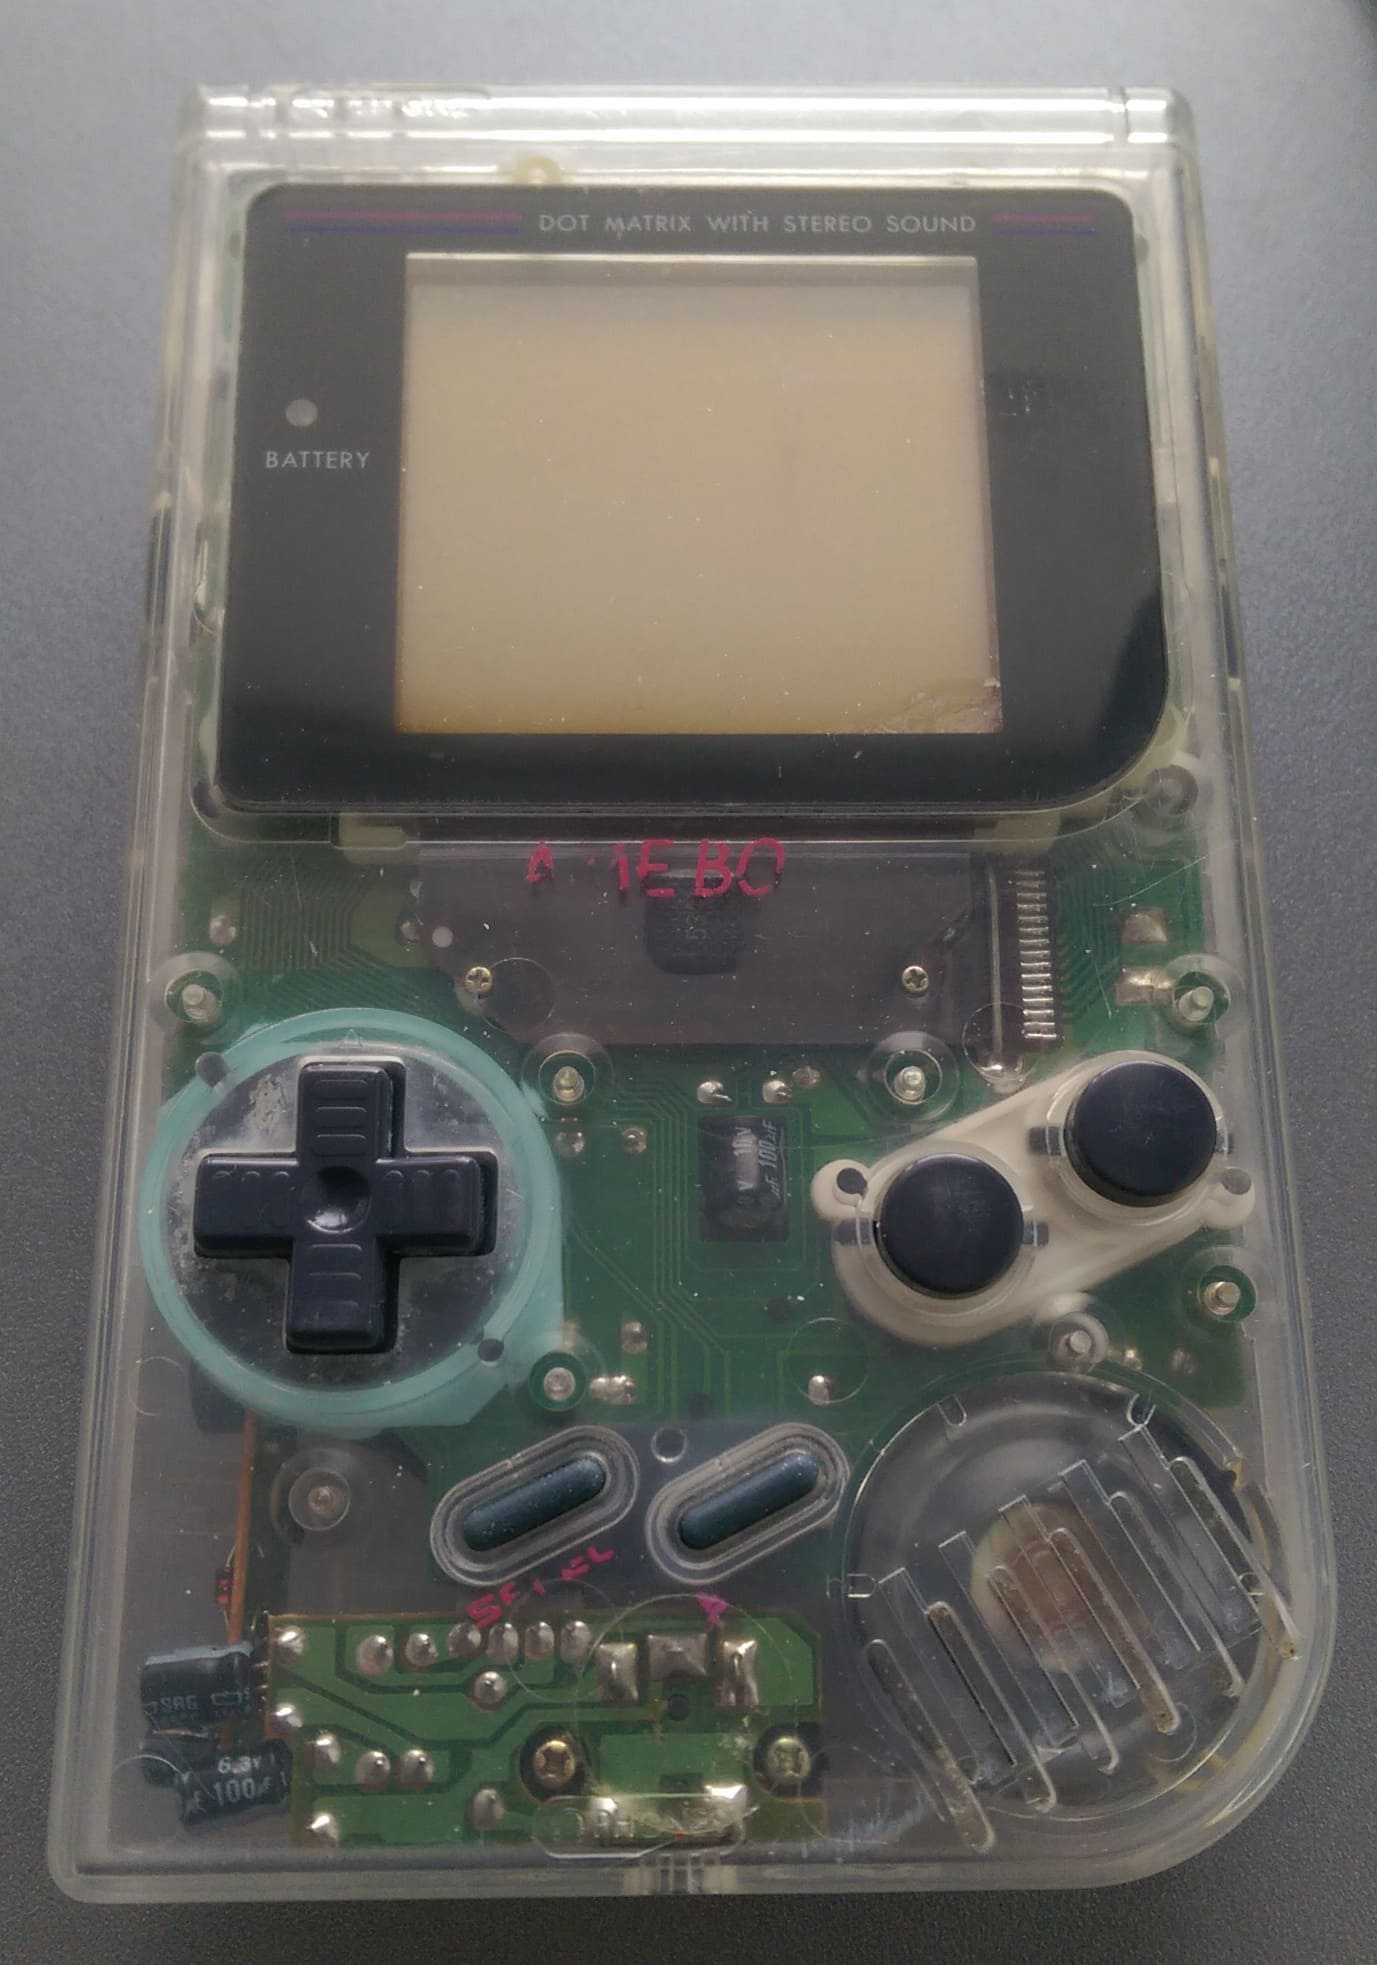 DMG: GM2167216 [gekkio] - Game Boy hardware database